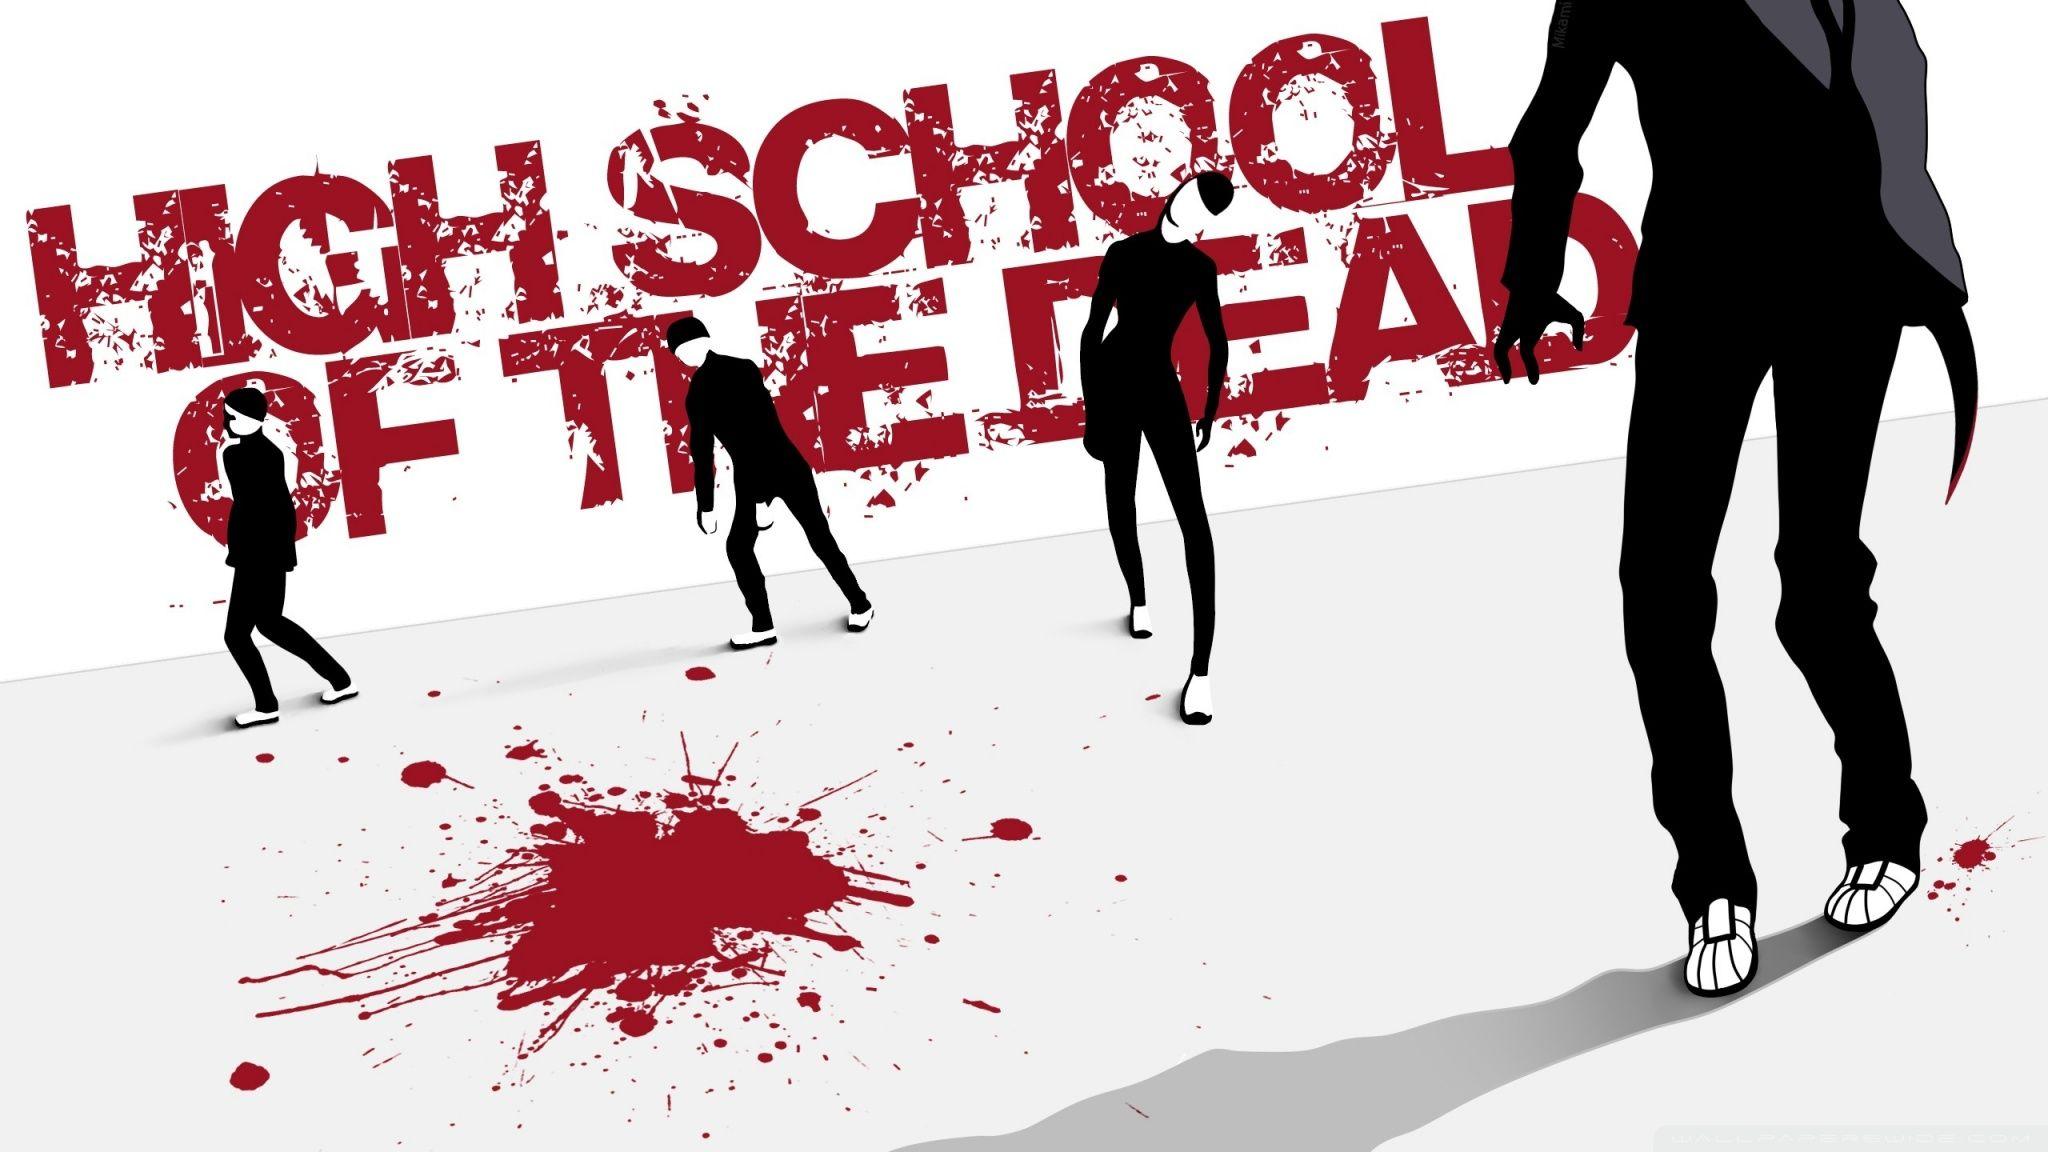 Anime Highschool Of The Dead HD Wallpaper by Wipebeef